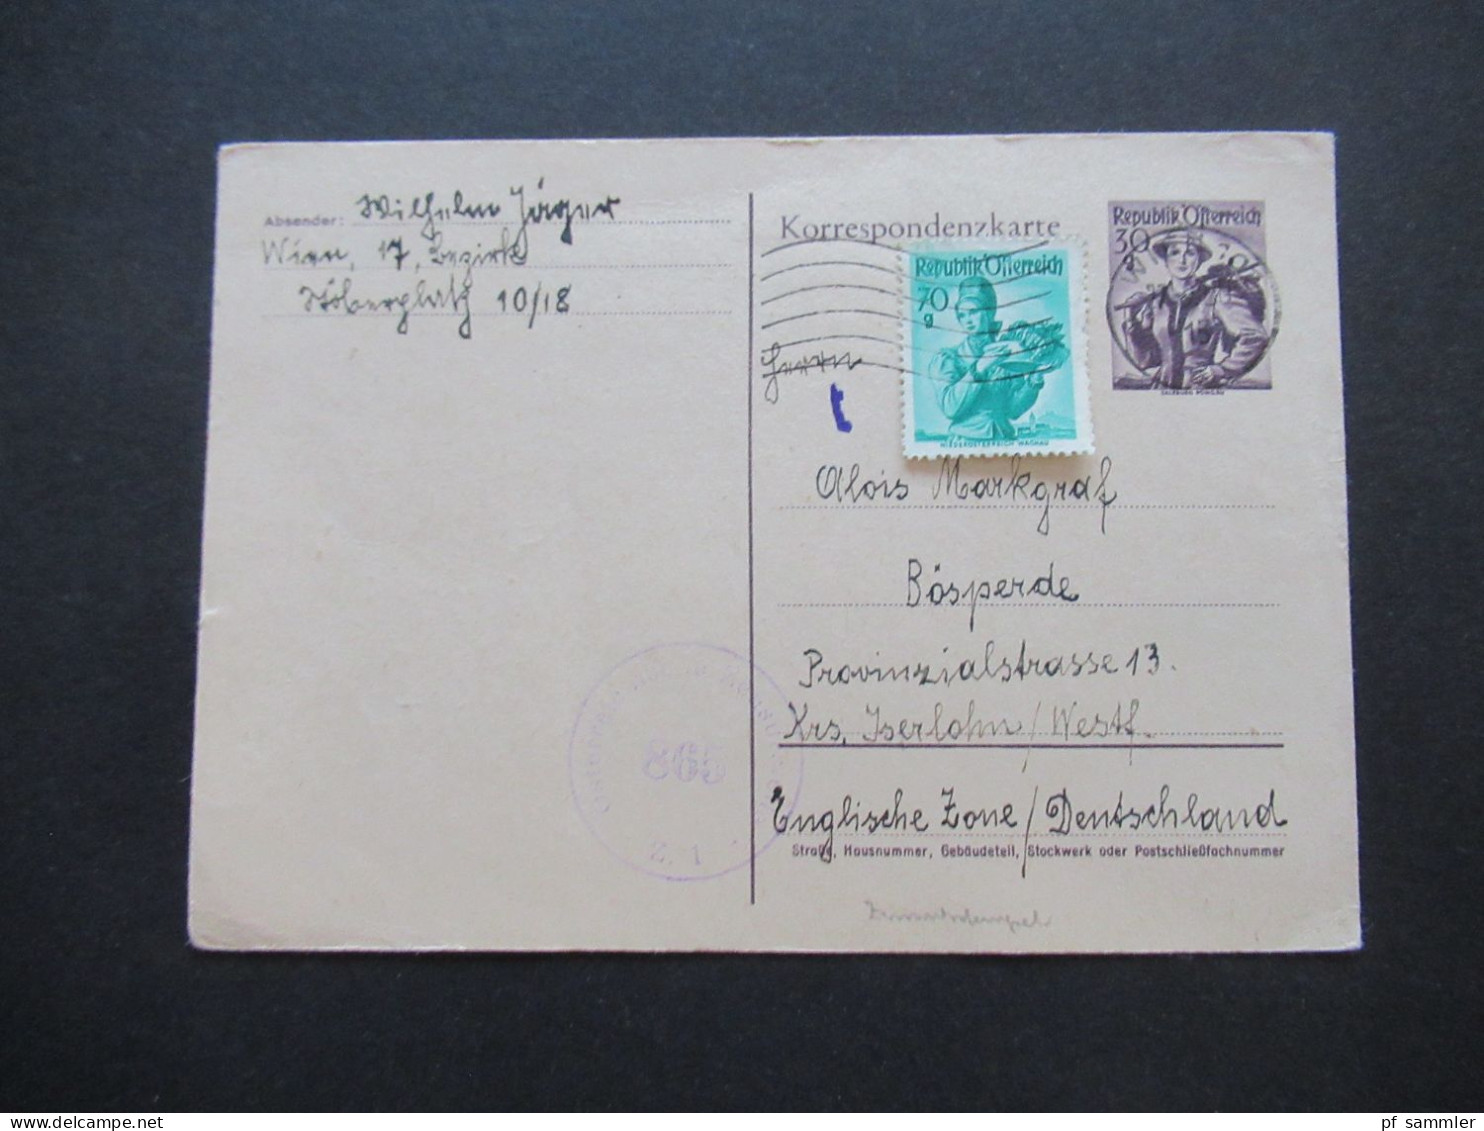 Österreich 1950 Auslands Postkarte Ganzsache P 332 Mit Zusatzfrankatur Und Zensurstempel Oesterreichische Zensurstelle Z - Cartes Postales